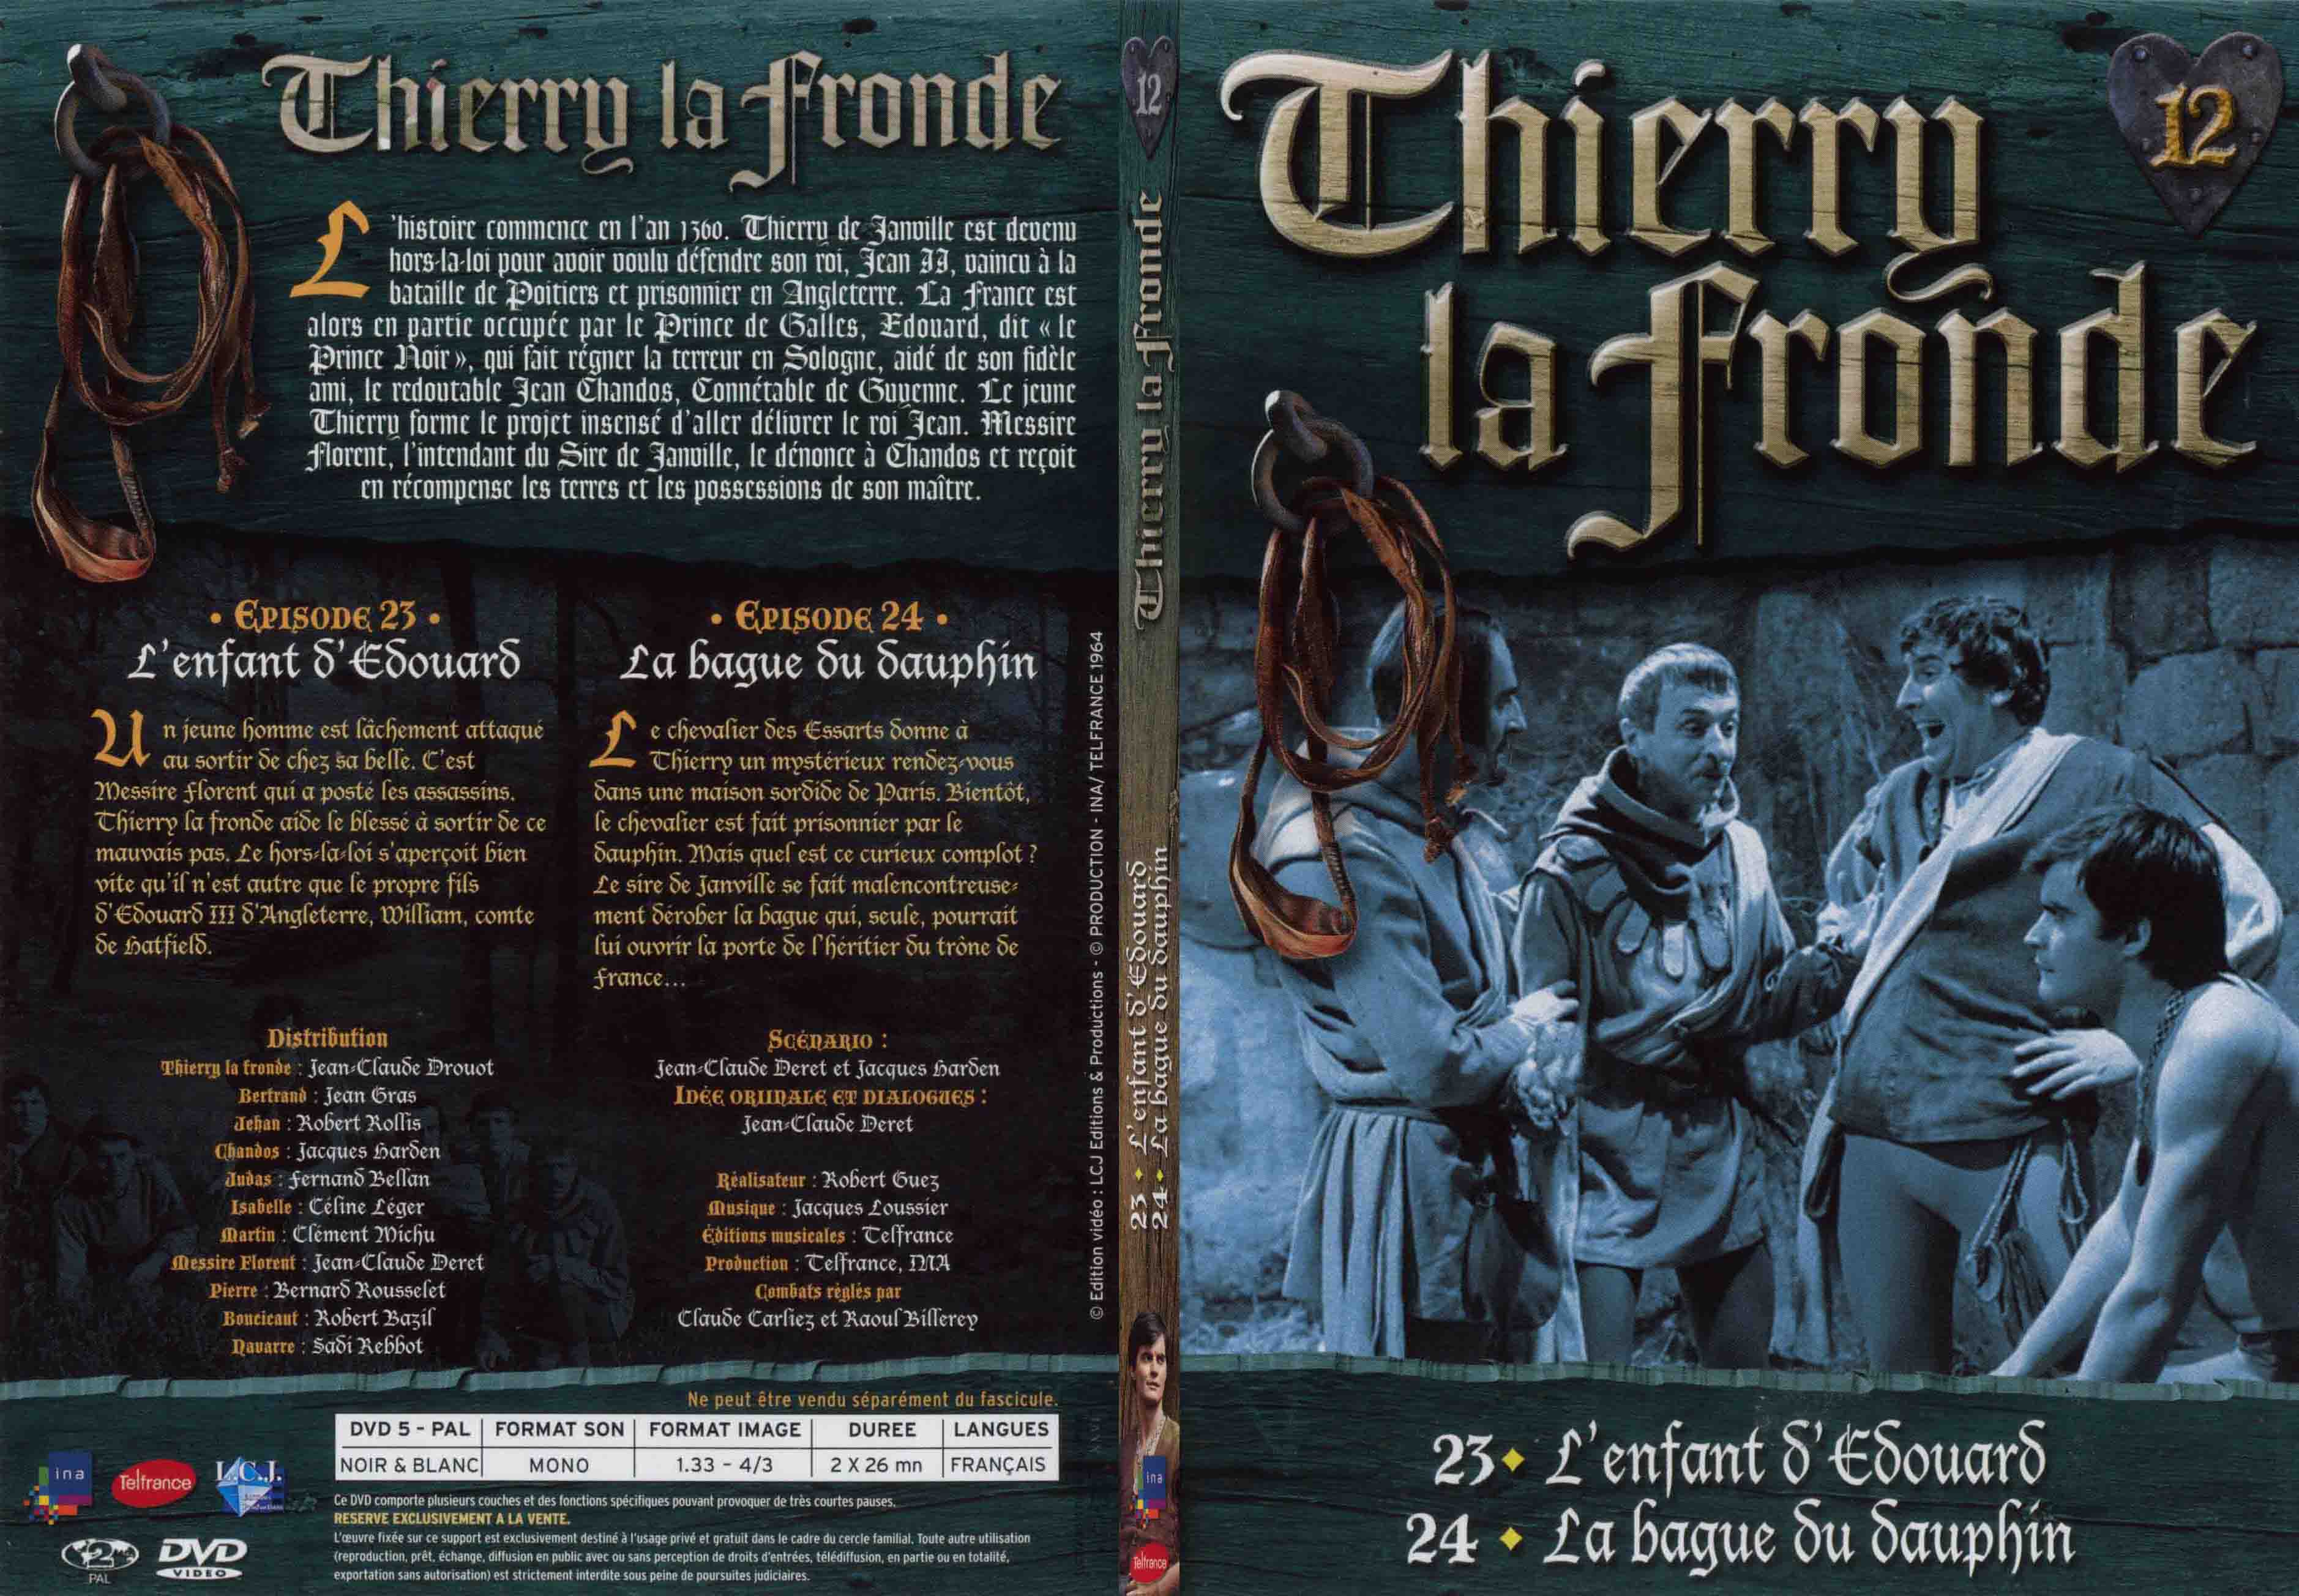 Jaquette DVD Thierry la Fronde vol 12 - SLIM